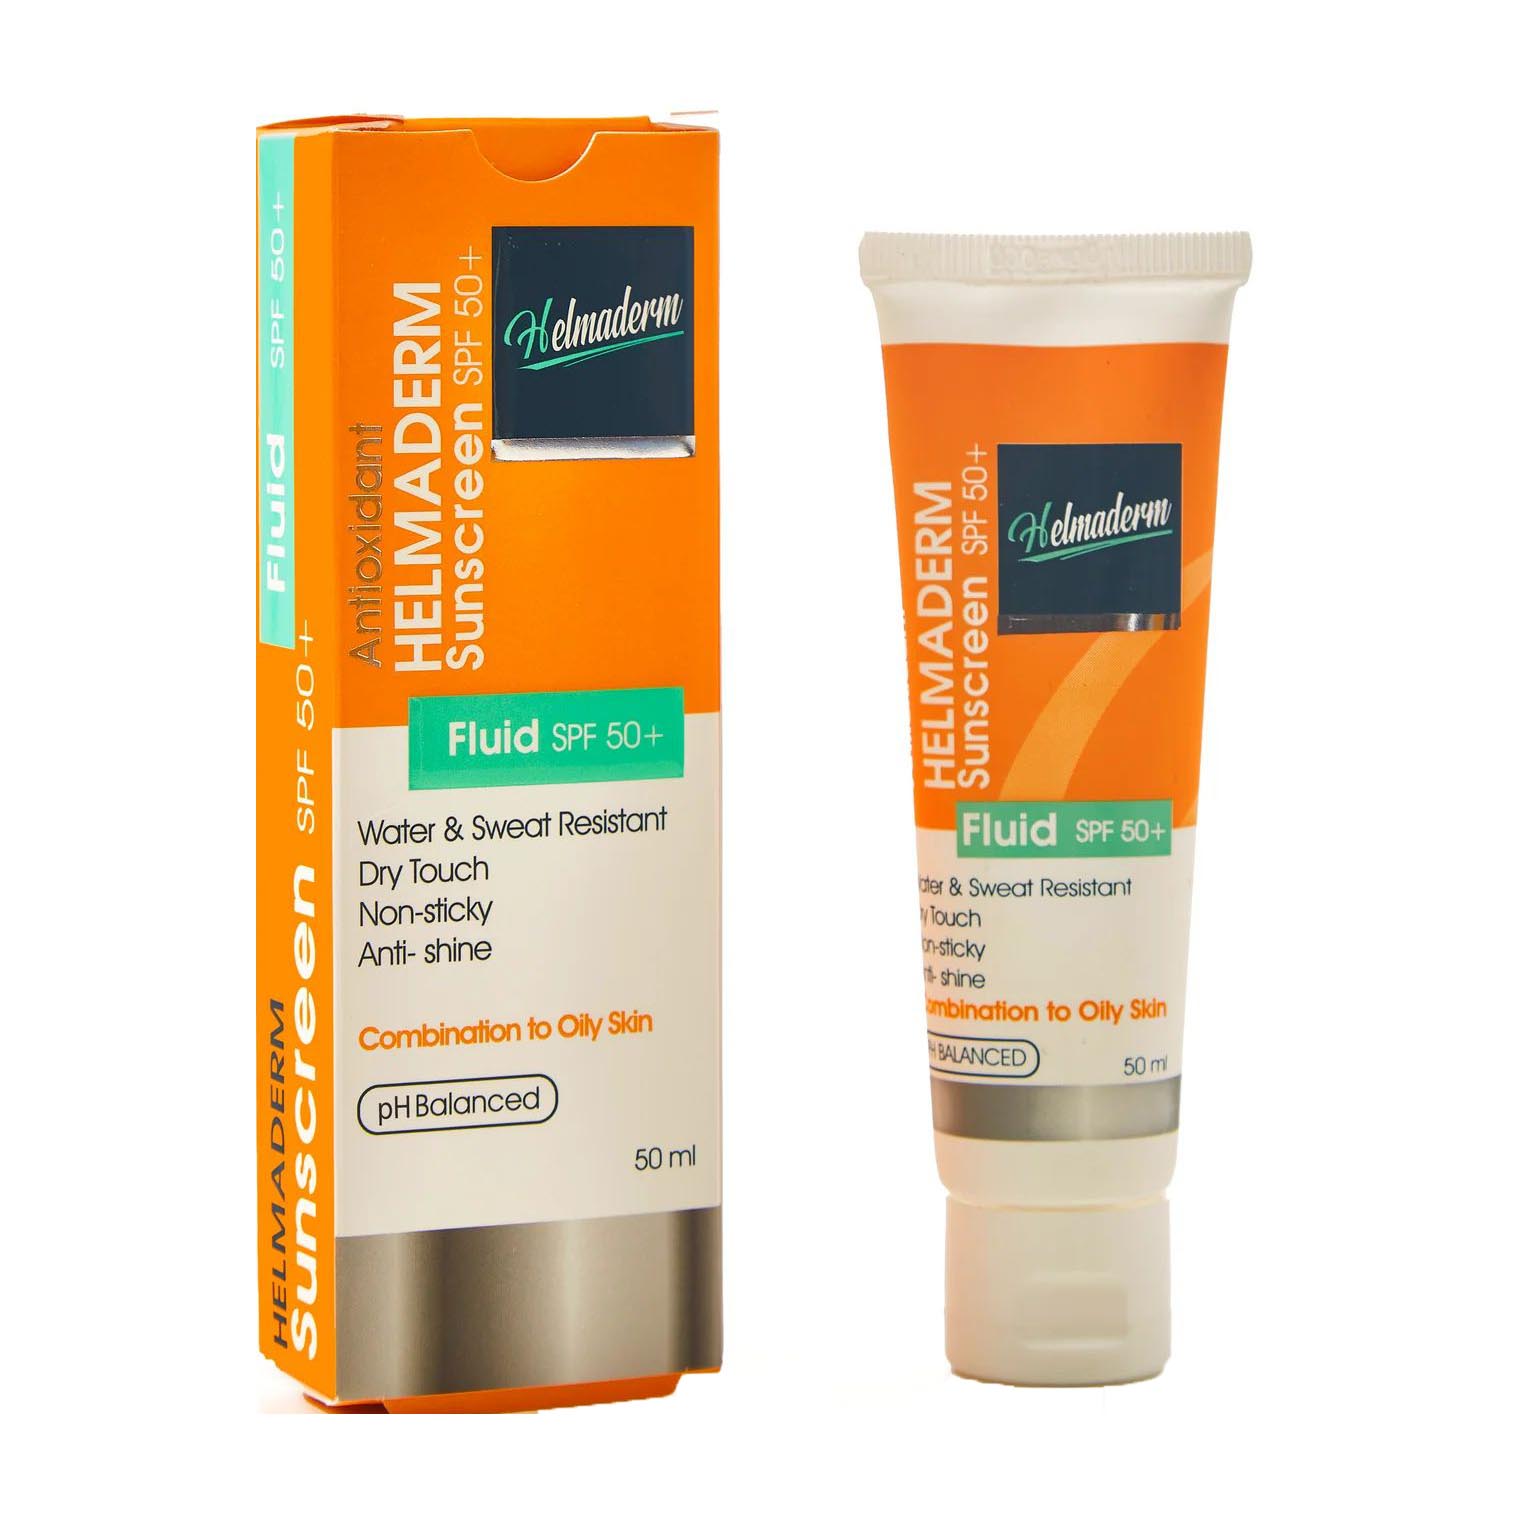 Helmaderm Antioxidant SPF50+ Sunscreen Fluid - 50ml - Bloom Pharmacy